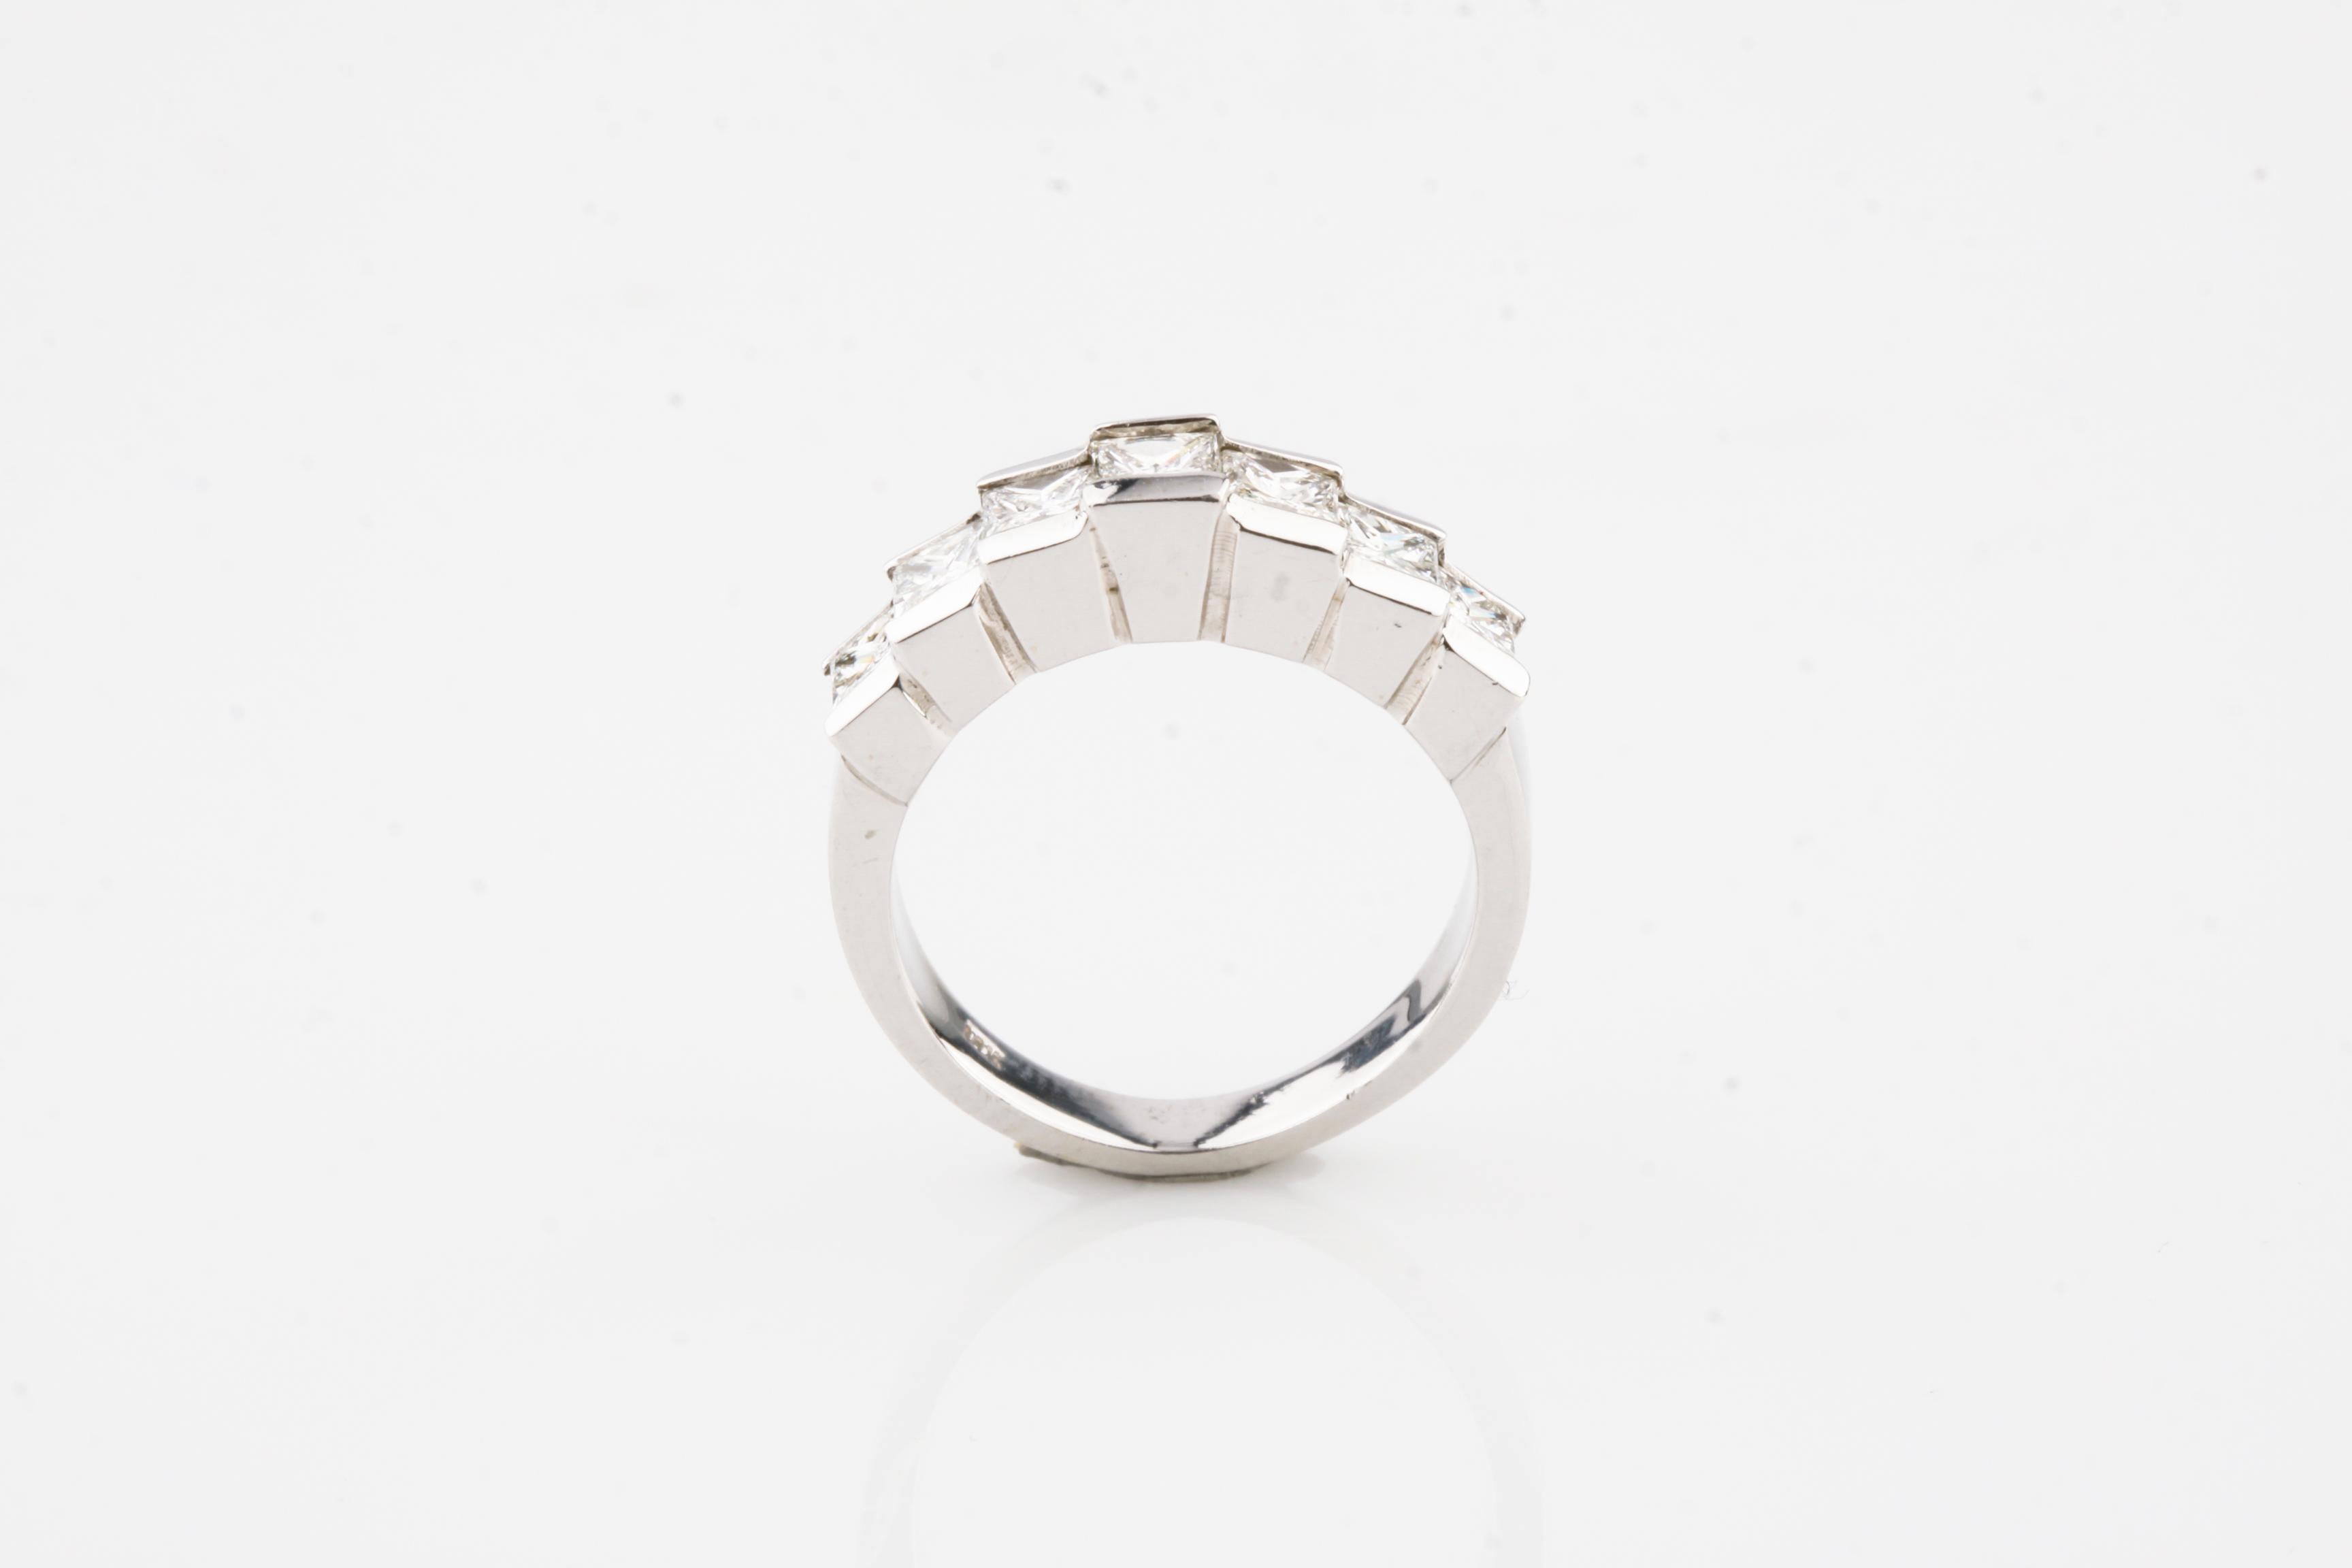 Ring Größe 5.5
Durchschnittliche Farbe - G
Durchschnittliche Klarheit - VS
Diamanten im Prinzessinnenschliff 
Ungefähr 1,75 Karat Gesamtgewicht
Gesamtmasse = 5,5 Gramm